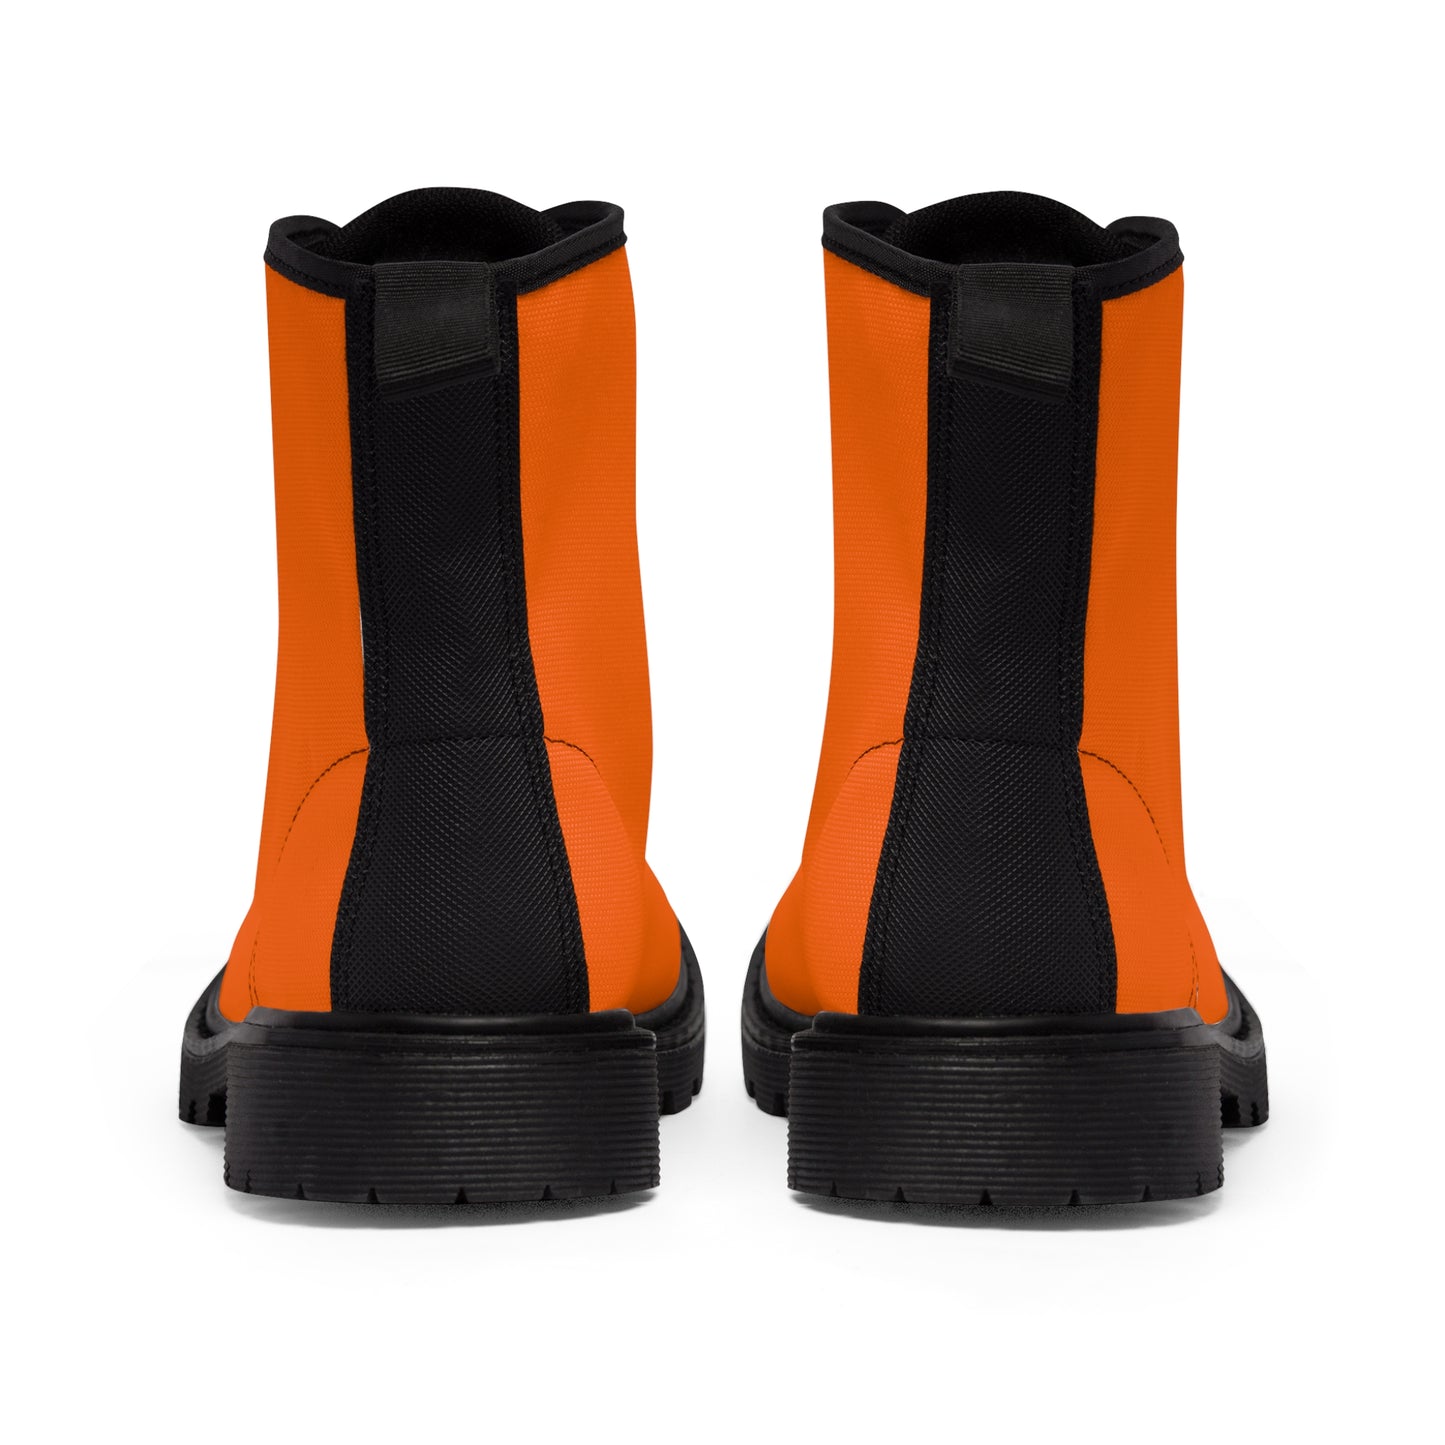 Women's Canvas Boots - Electric Orange US 11 Black sole